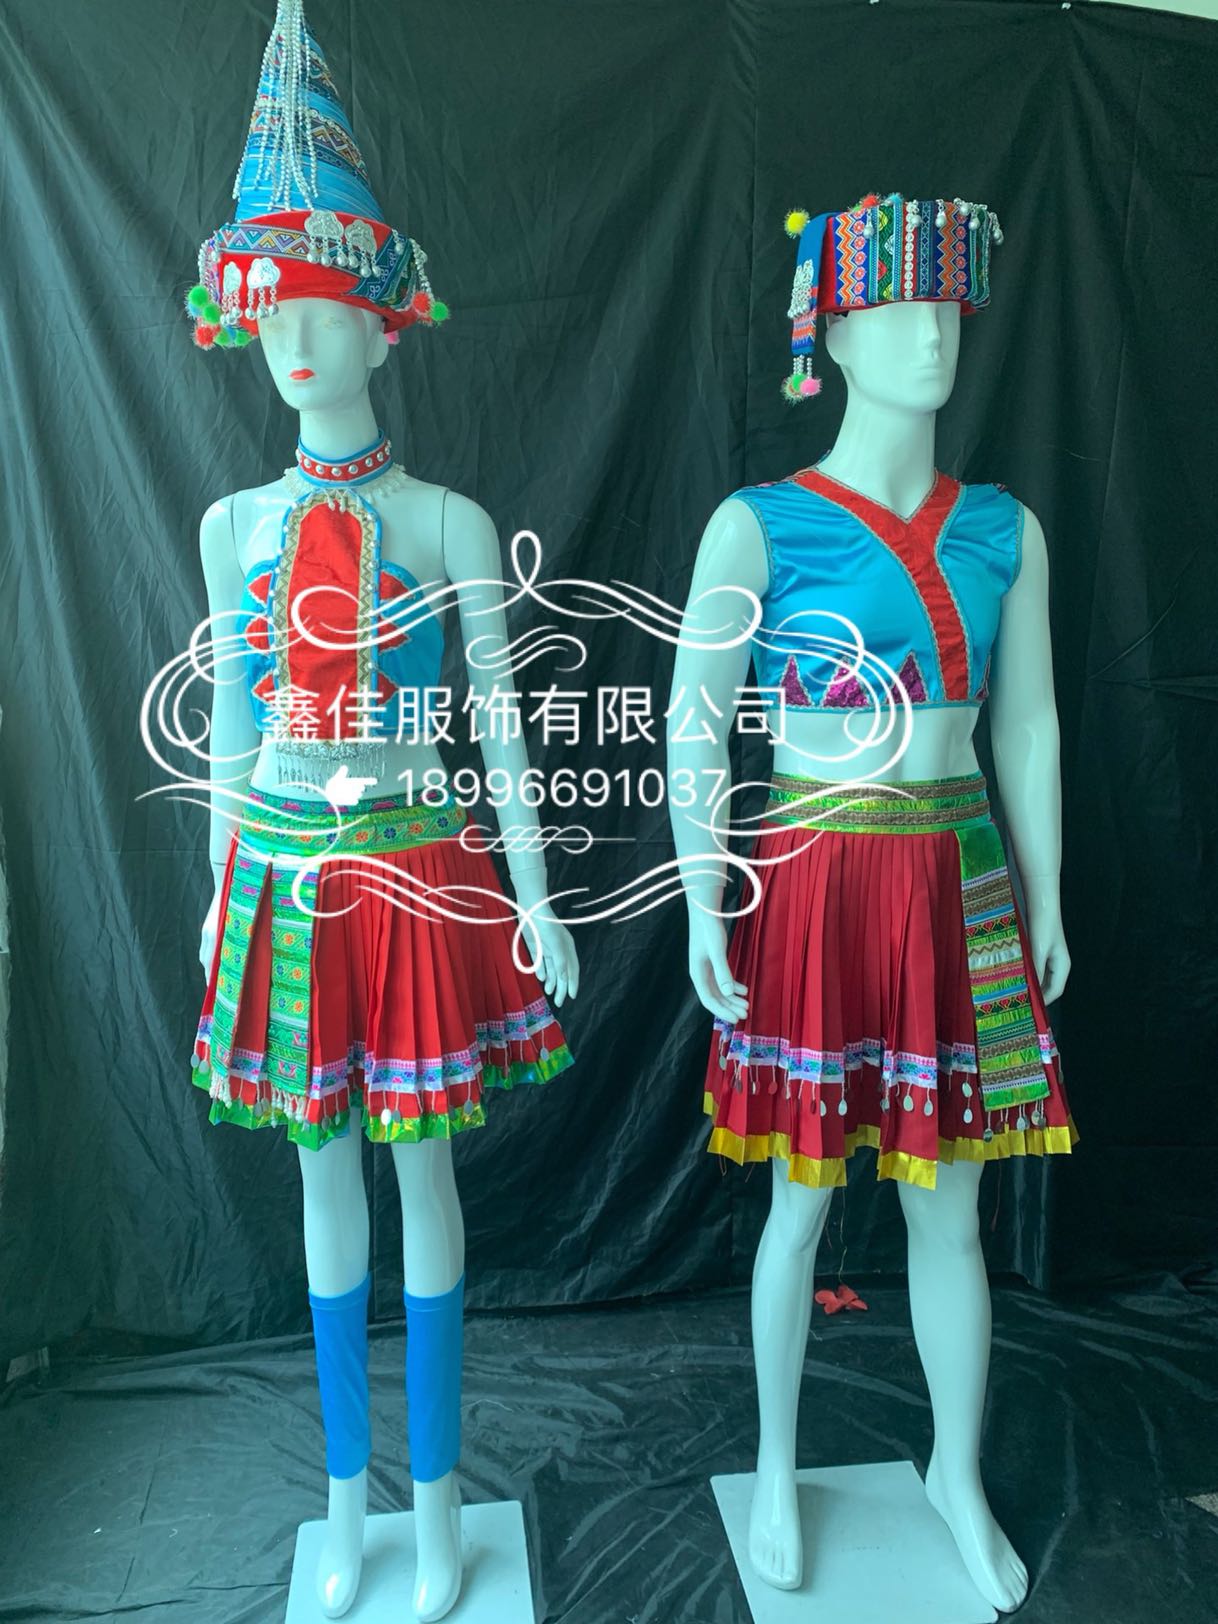 咛罗娜嘞瑶族舞蹈服男女组合套装红色短裙民族服饰六届荷花金奖款